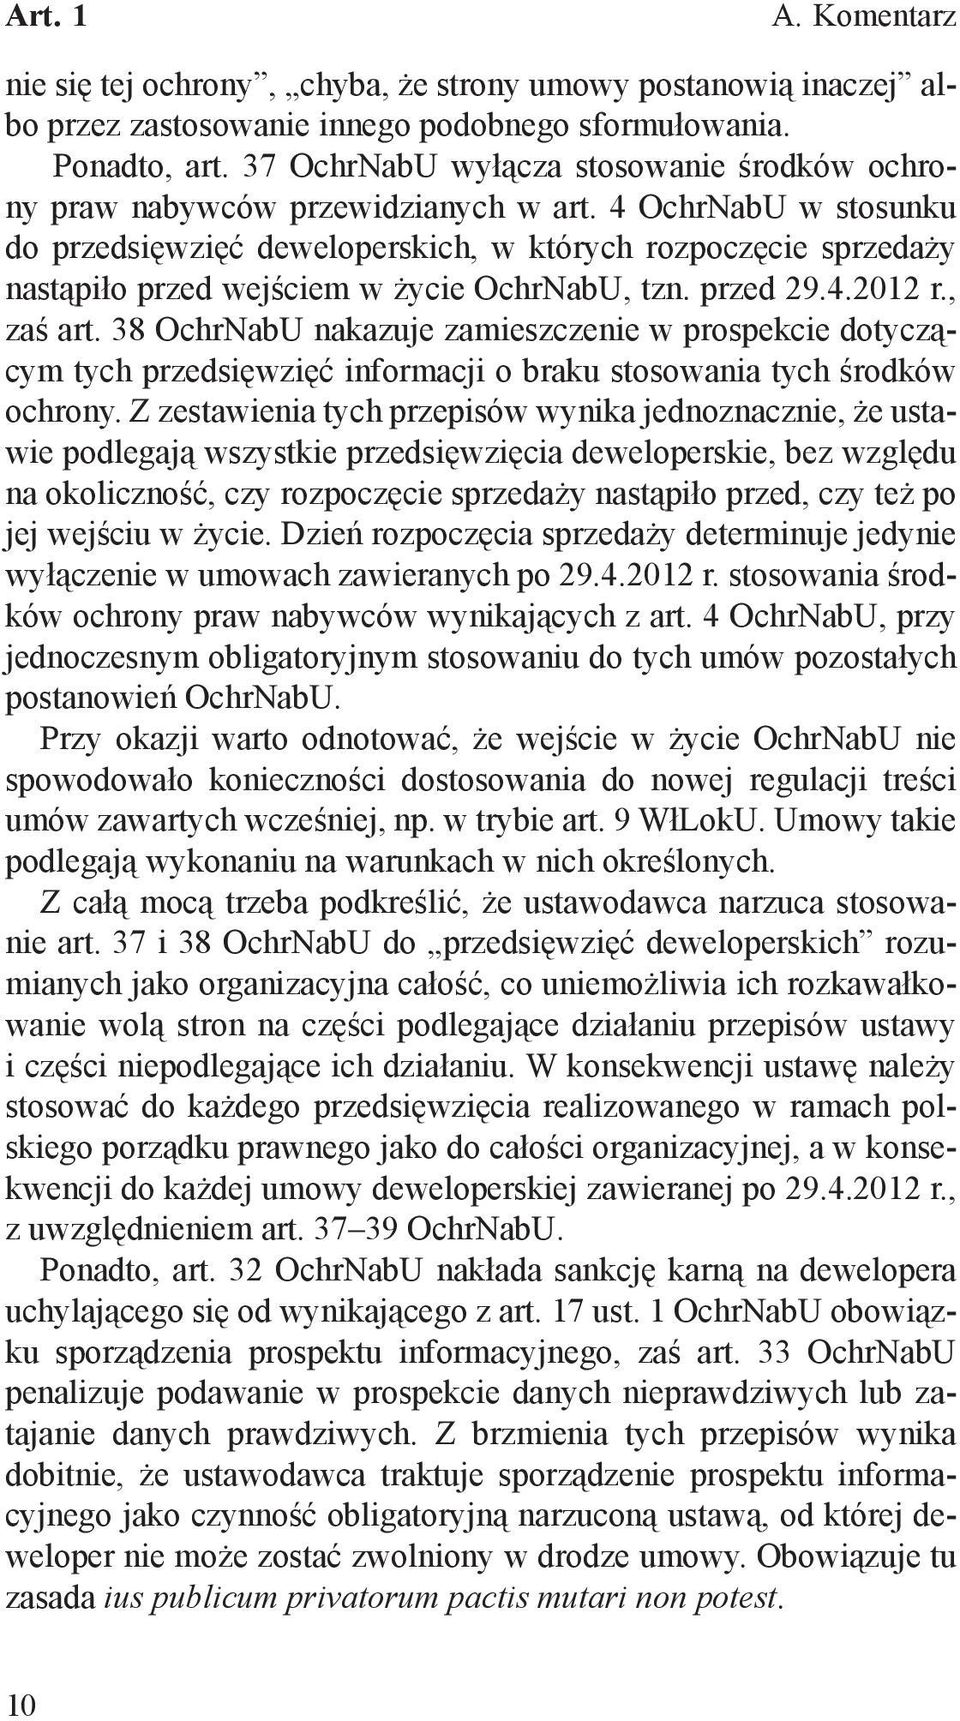 4 OchrNabU w stosunku do przedsięwzięć deweloperskich, w których rozpoczęcie sprzedaży nastąpiło przed wejściem w życie OchrNabU, tzn. przed 29.4.2012 r., zaś art.